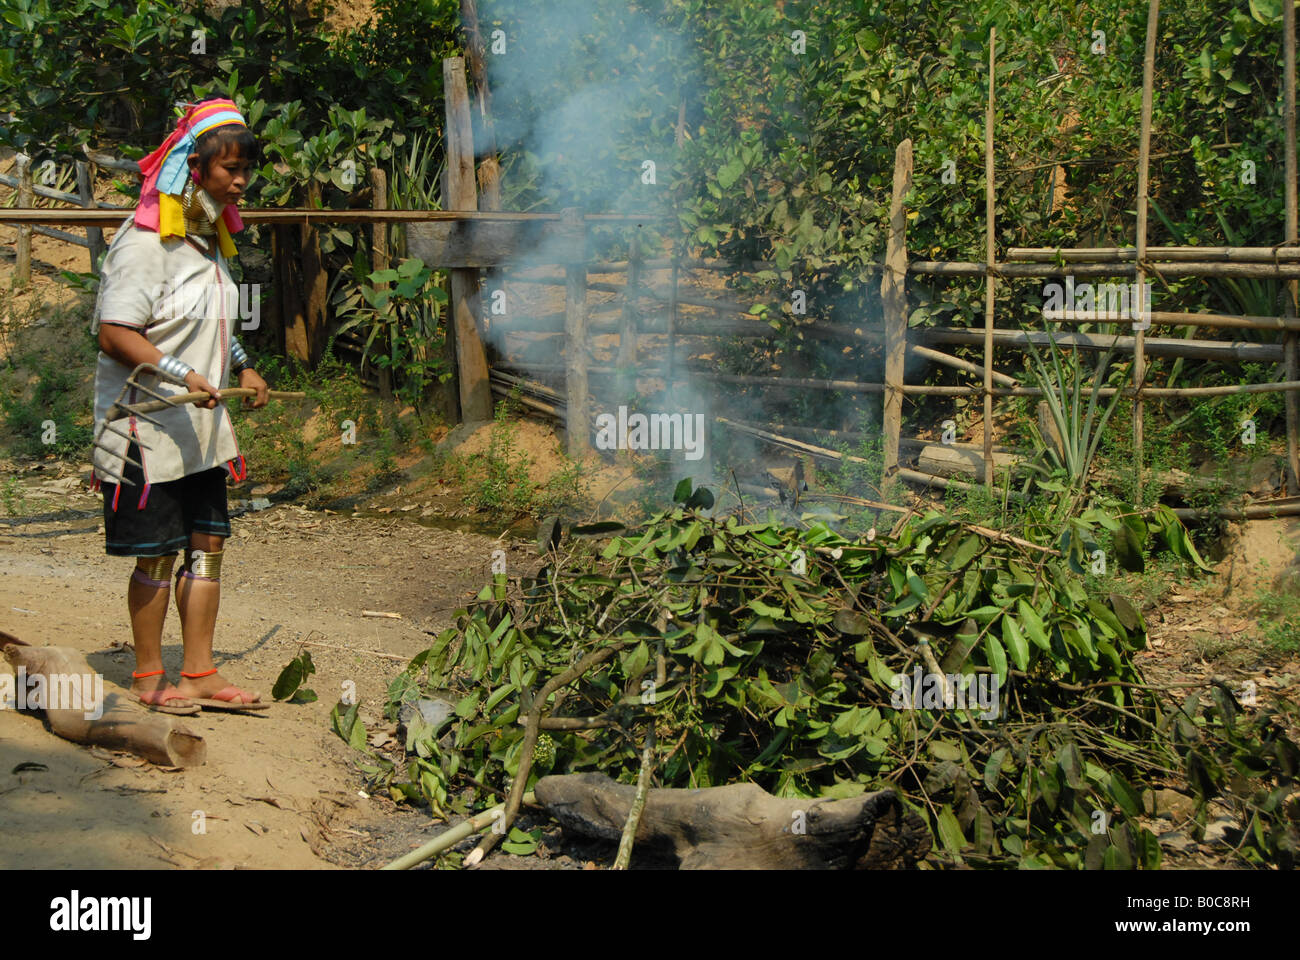 longneck karen woman  burning leaves, mae hong son , thailand Stock Photo